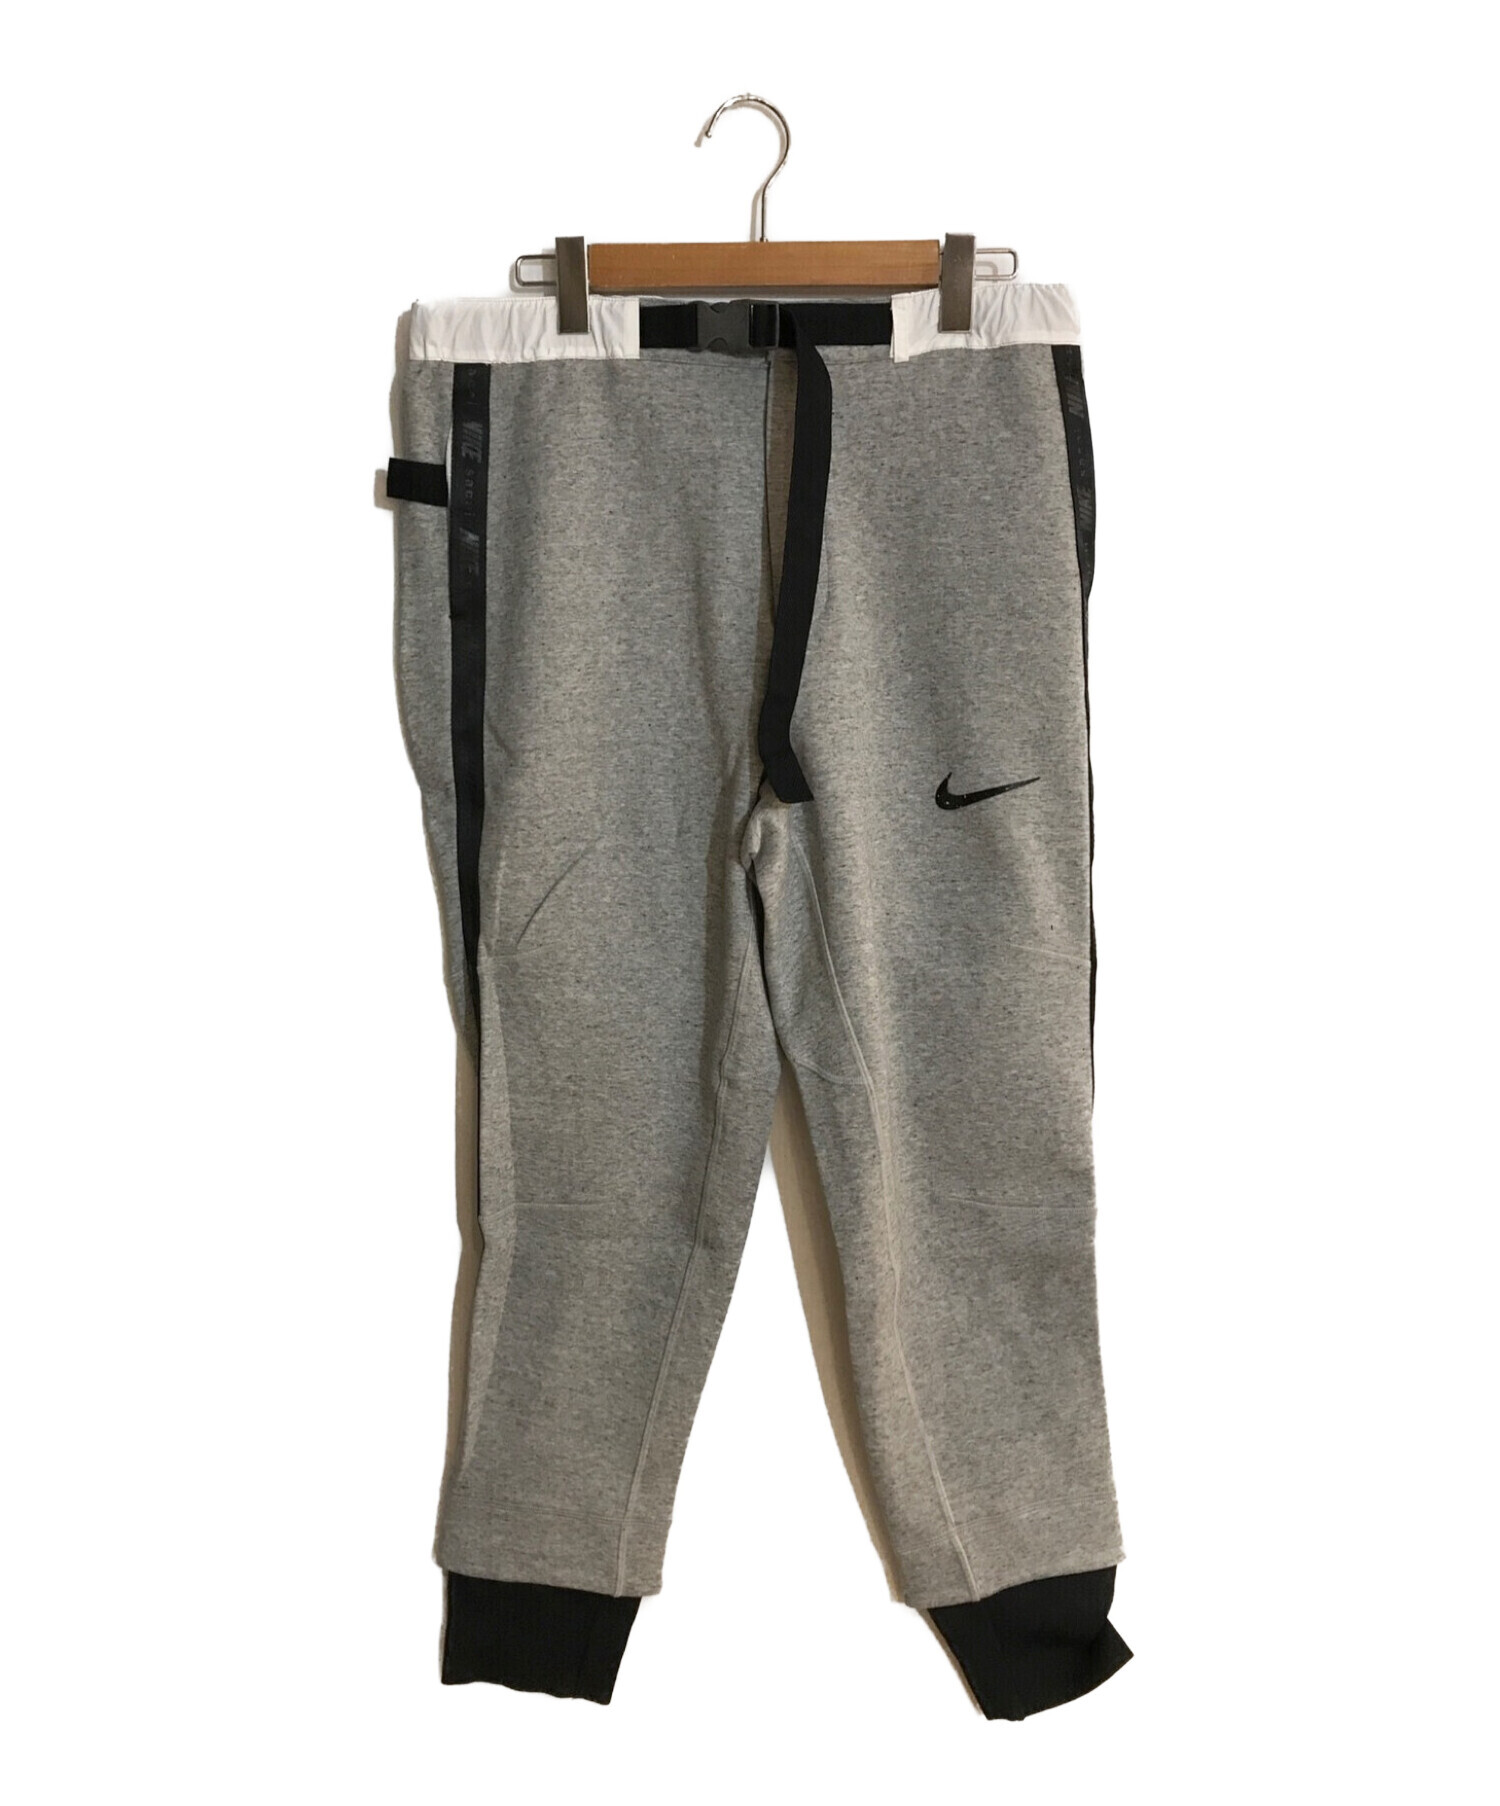 日本公式XL ナイキ サカイ Nike Sacai フリース スウェット パンツ パンツ